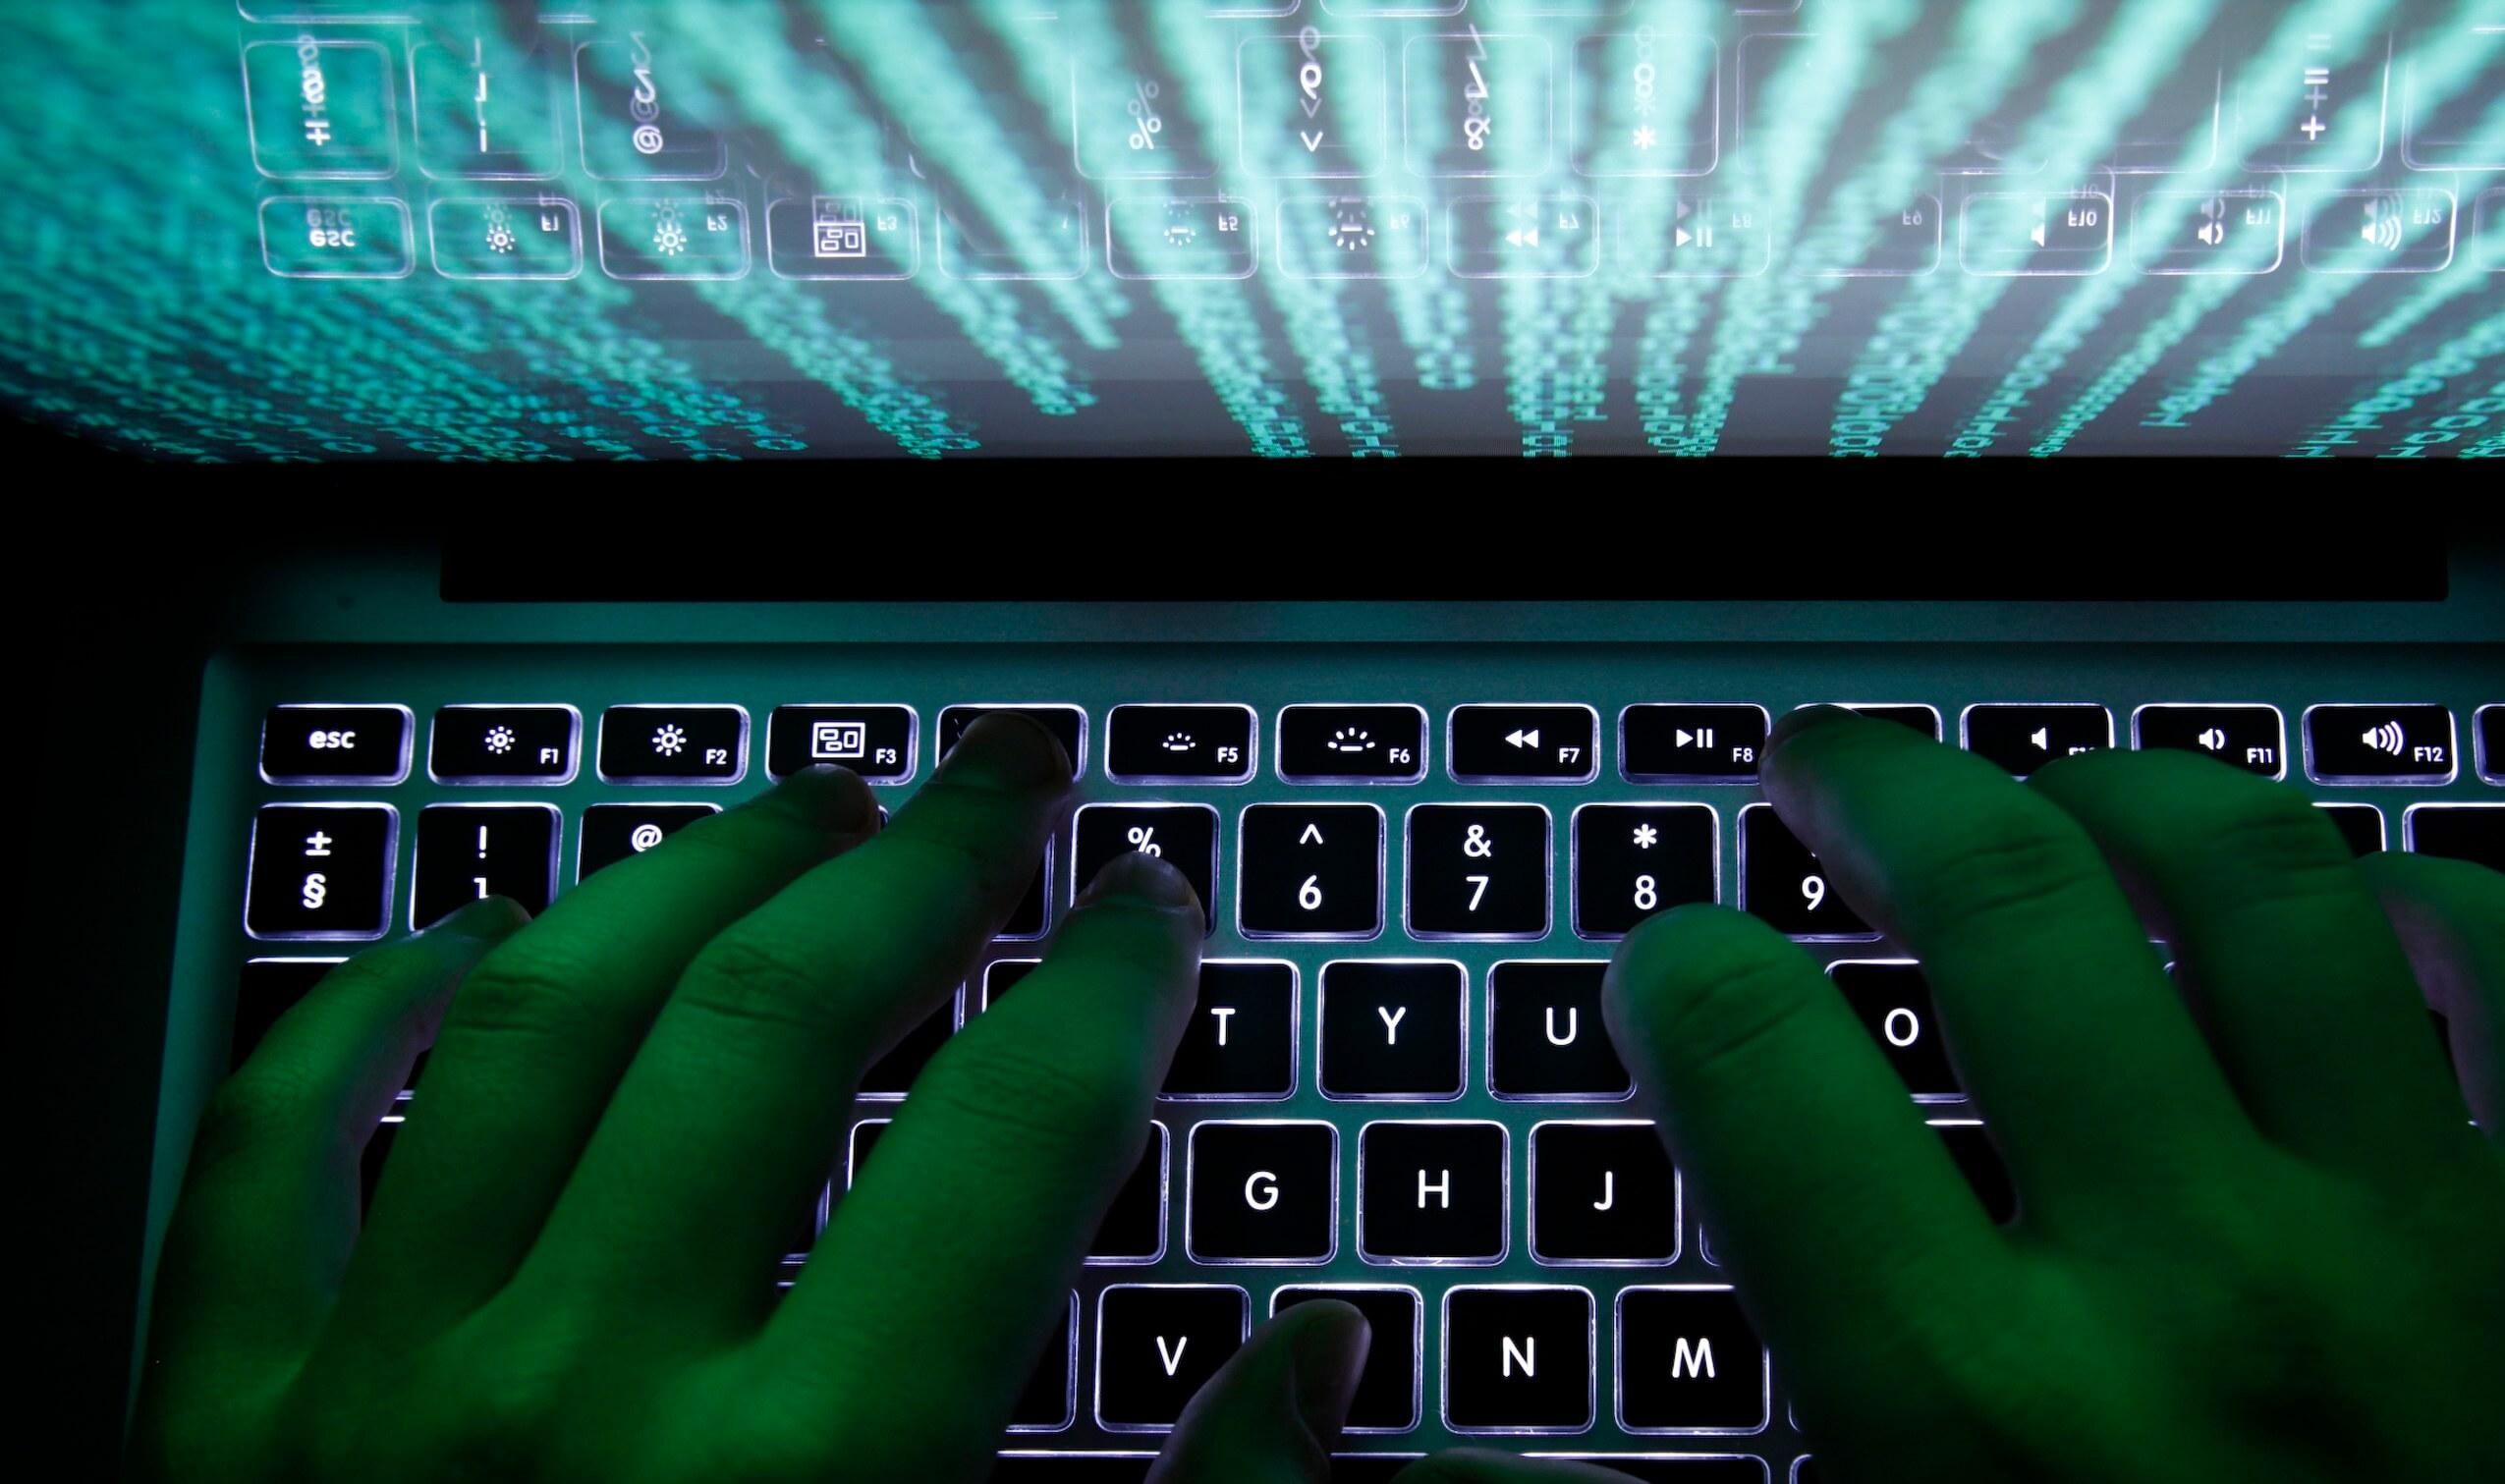 Δίωξη Ηλεκτρονικού Εγκλήματος: Εξιχνιάστηκαν τέσσερις υποθέσεις παιδικής πορνογραφίας